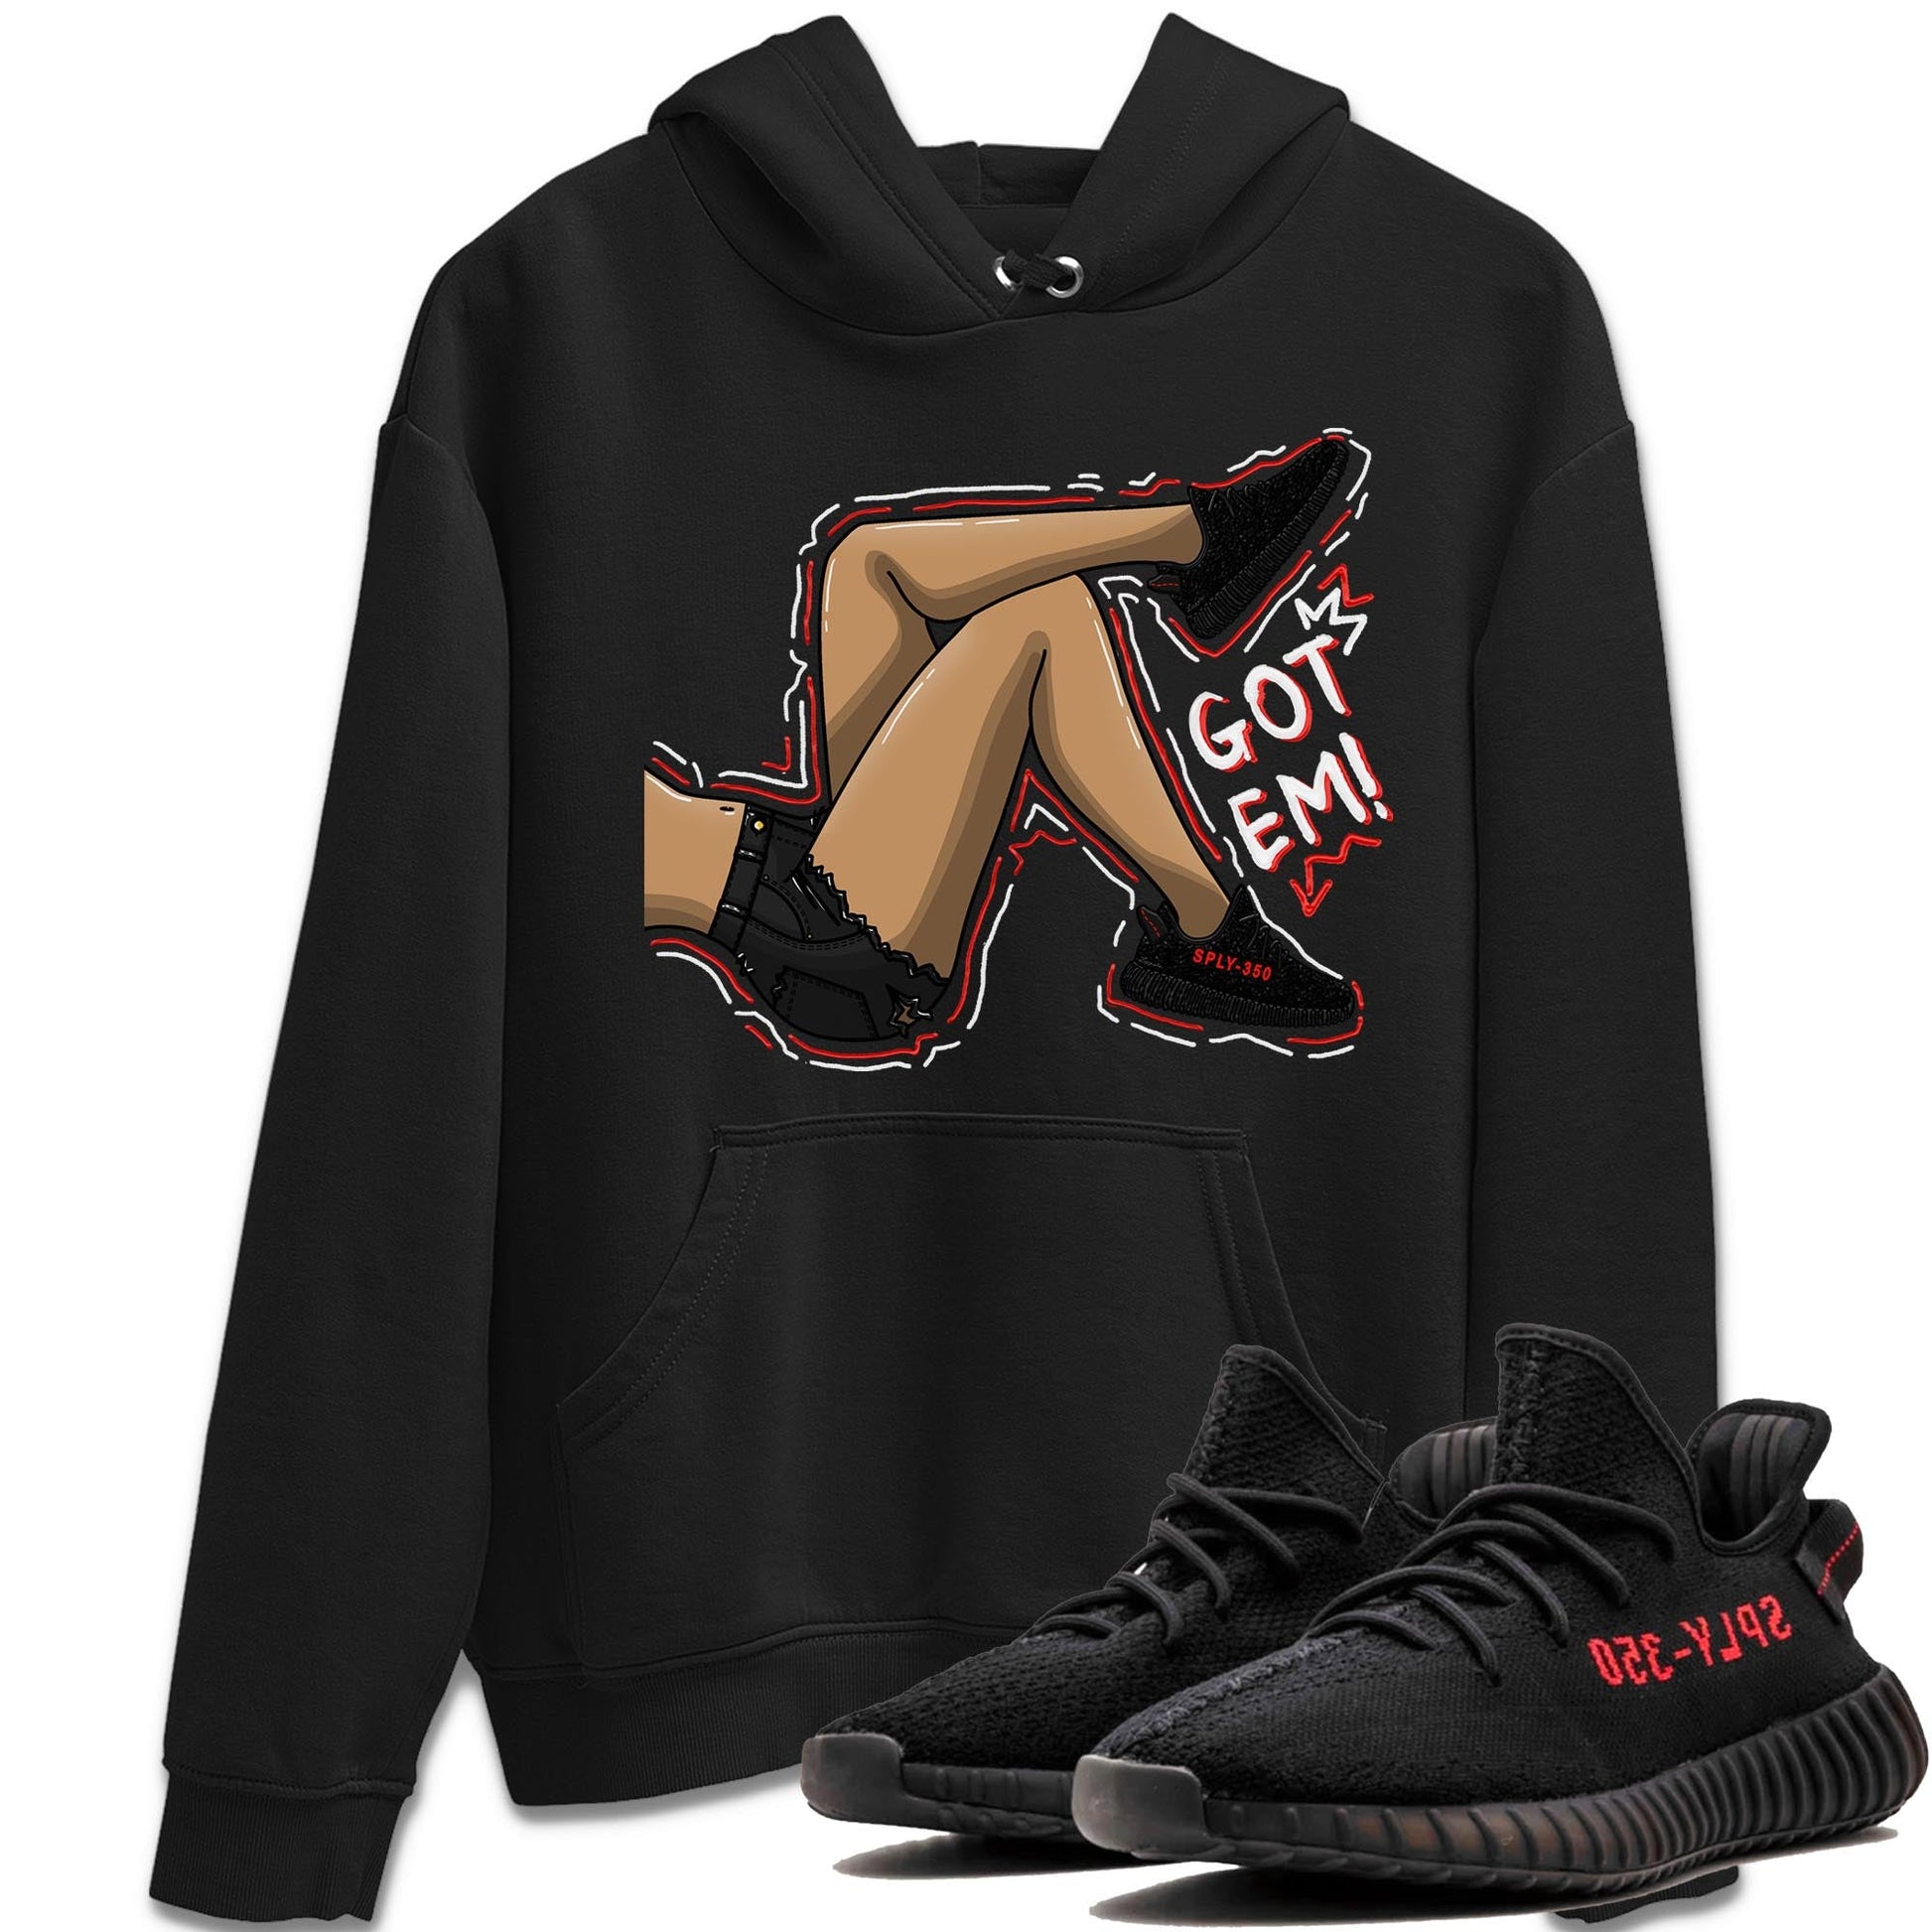 Yeezy 350 Bred shirt to match jordans Got Em Legs sneaker tees Yeezy Boost 350 V2 Bred SNRT Sneaker Release Tees Unisex Black 1 T-Shirt